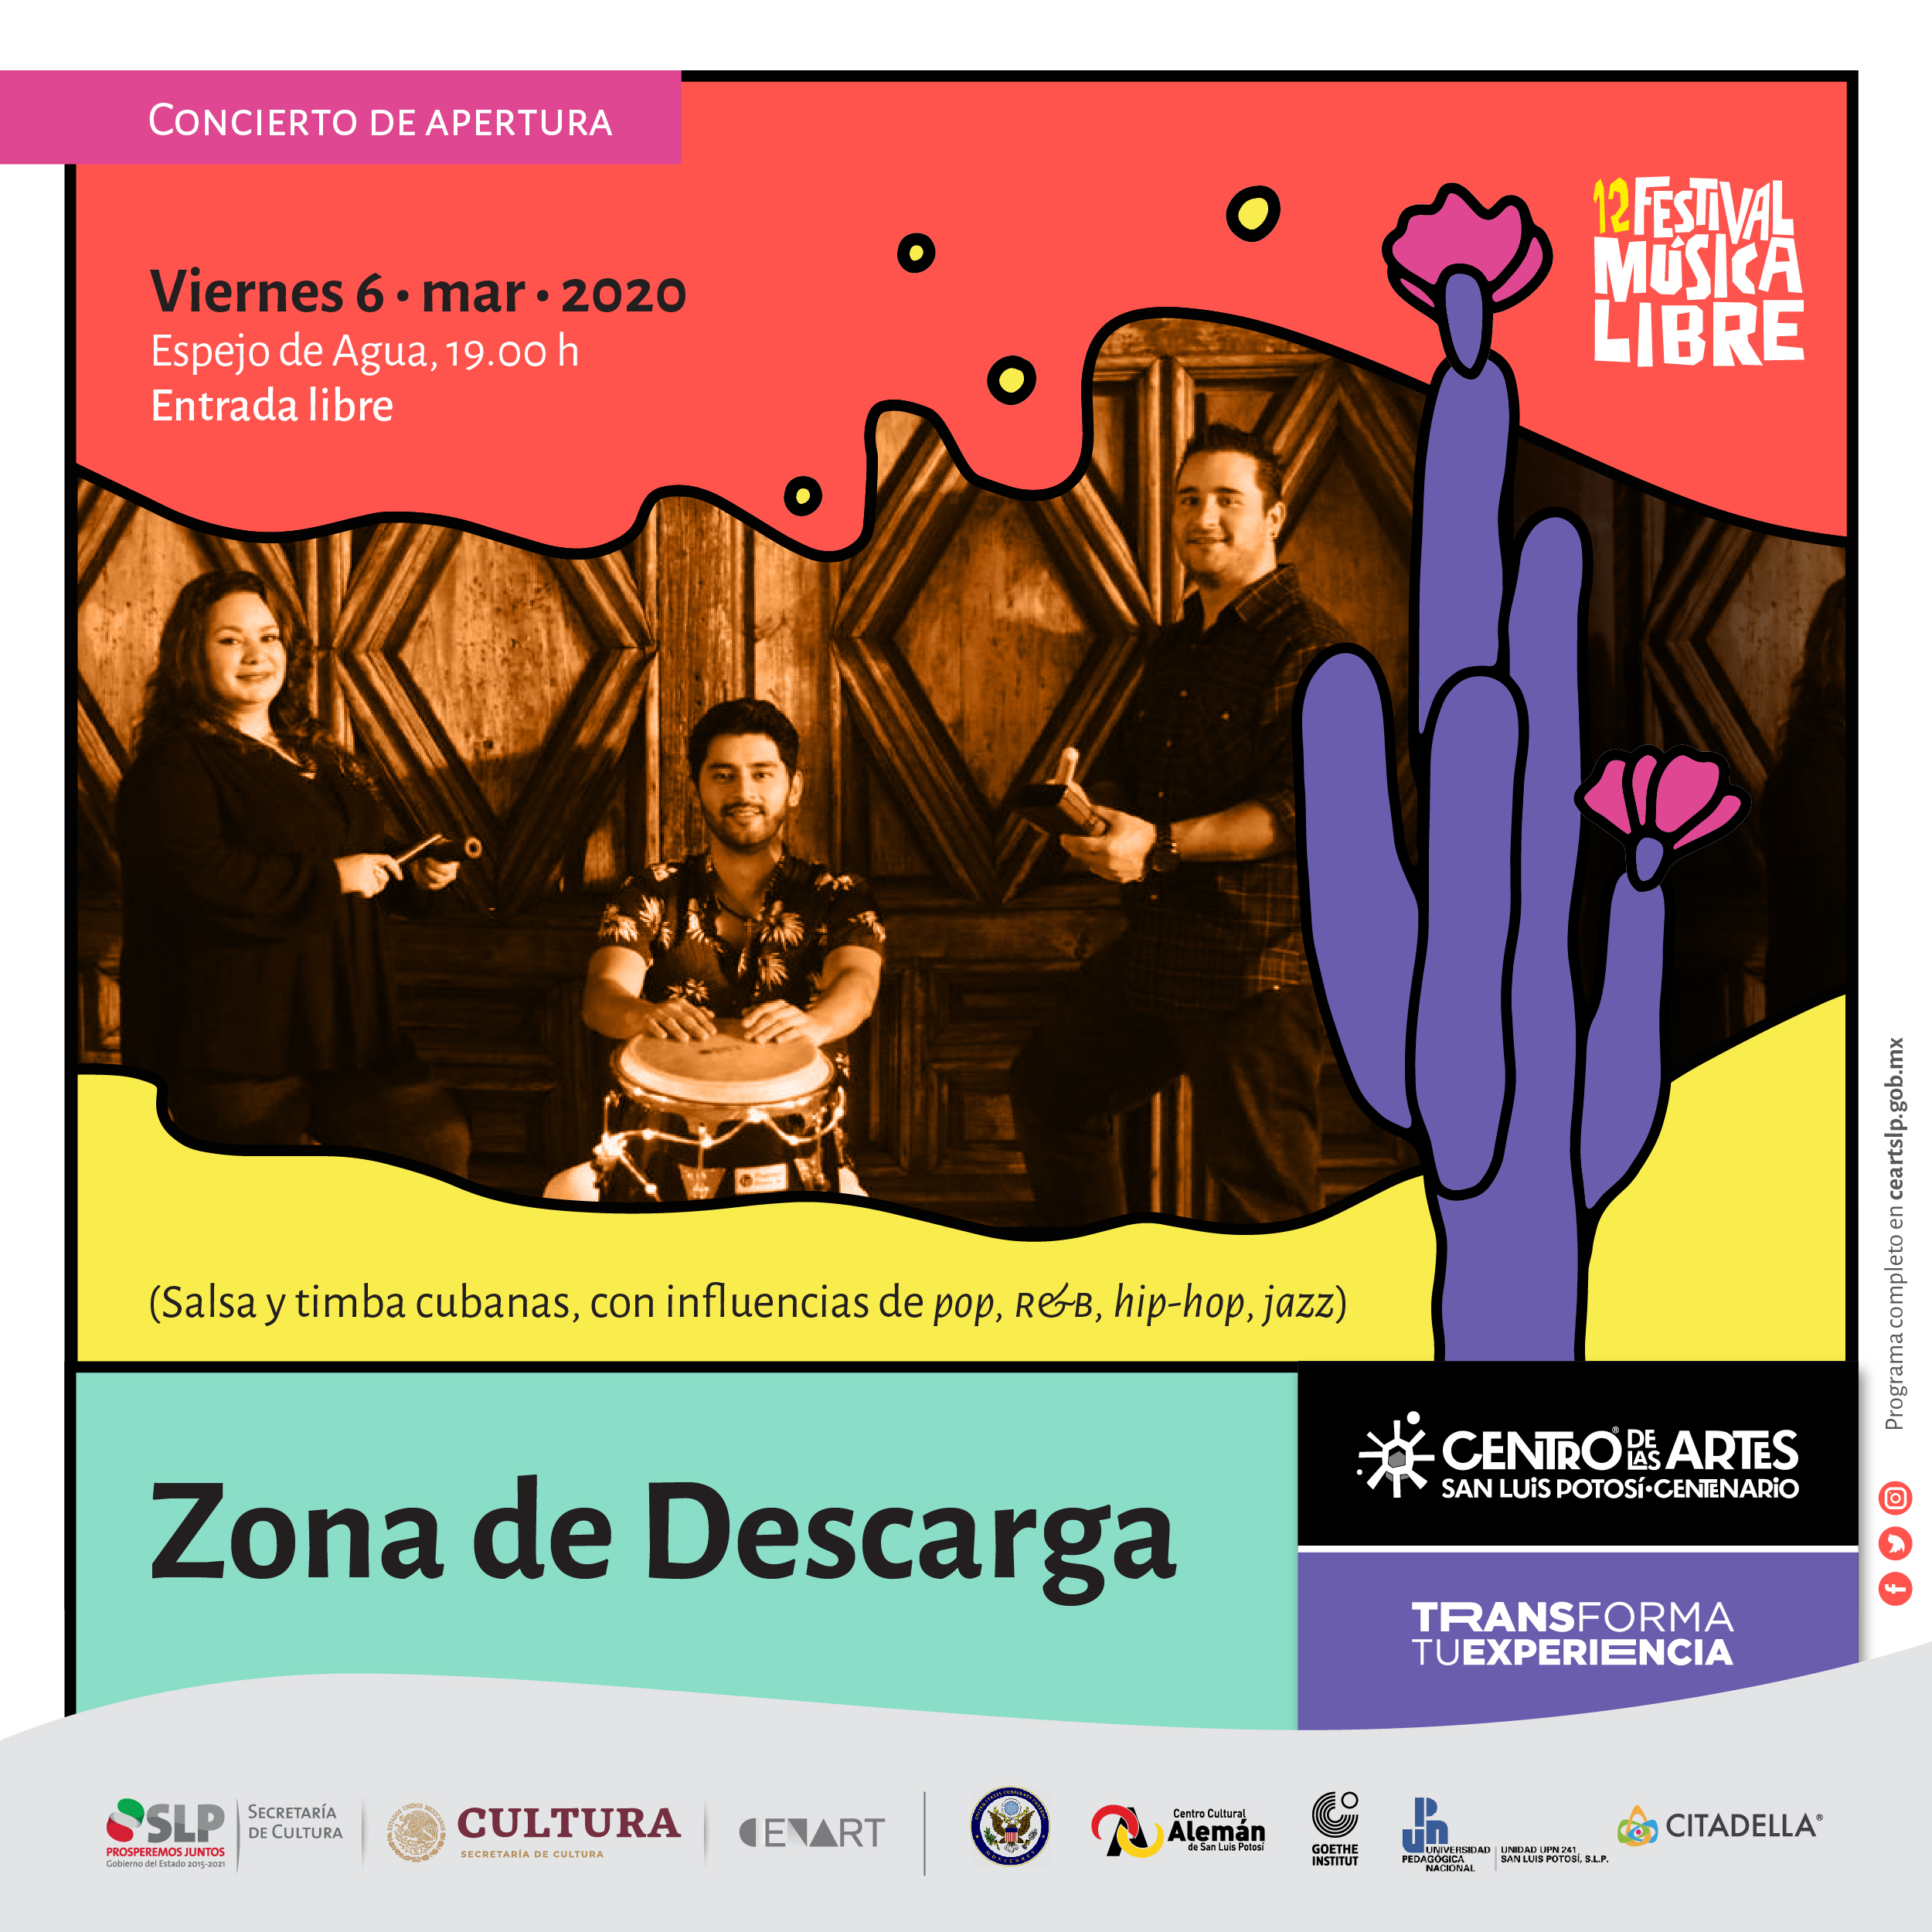 “Zona de descarga” inaugura este viernes el festival Música Libre